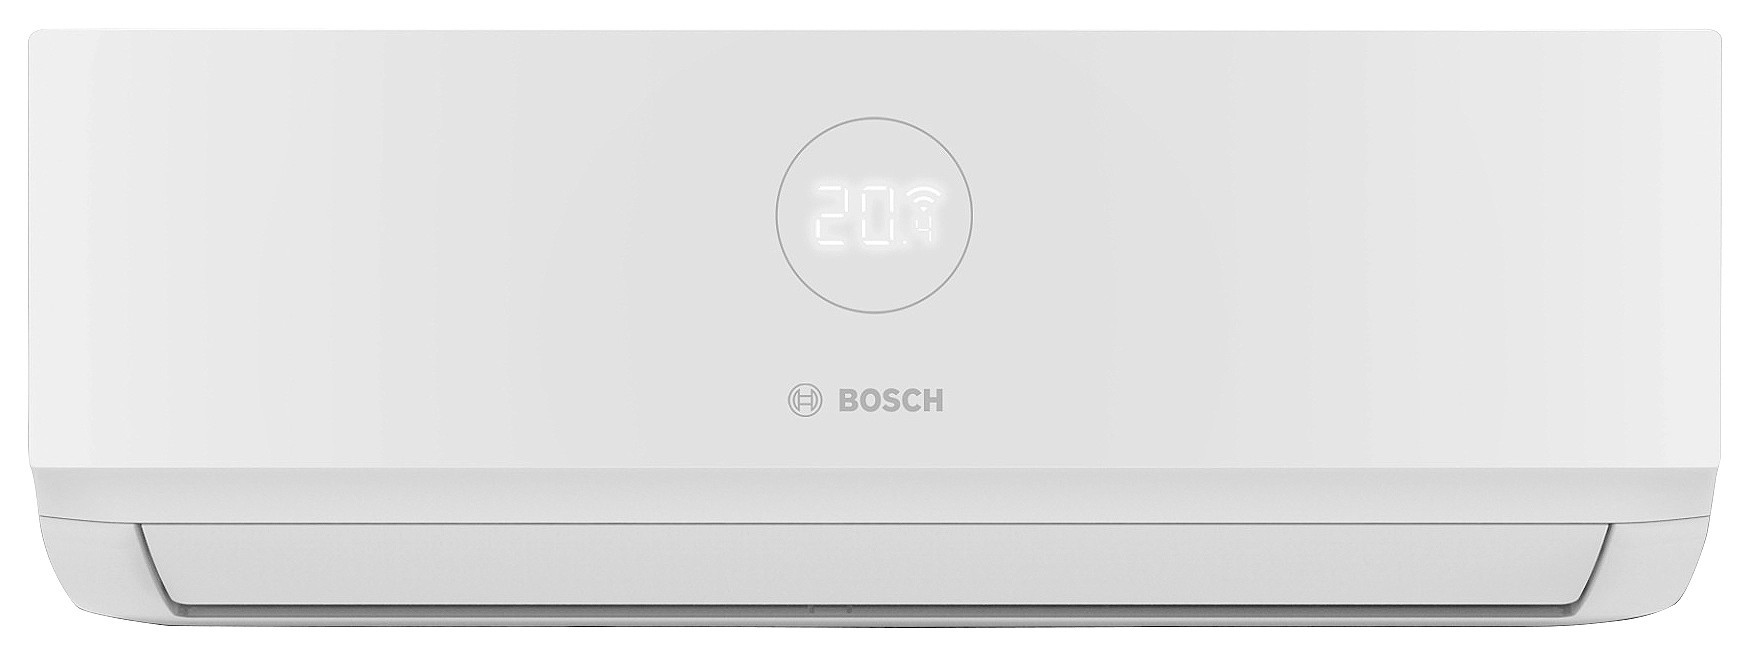 Bosch CL3000iU W 35E 3,5 кВт